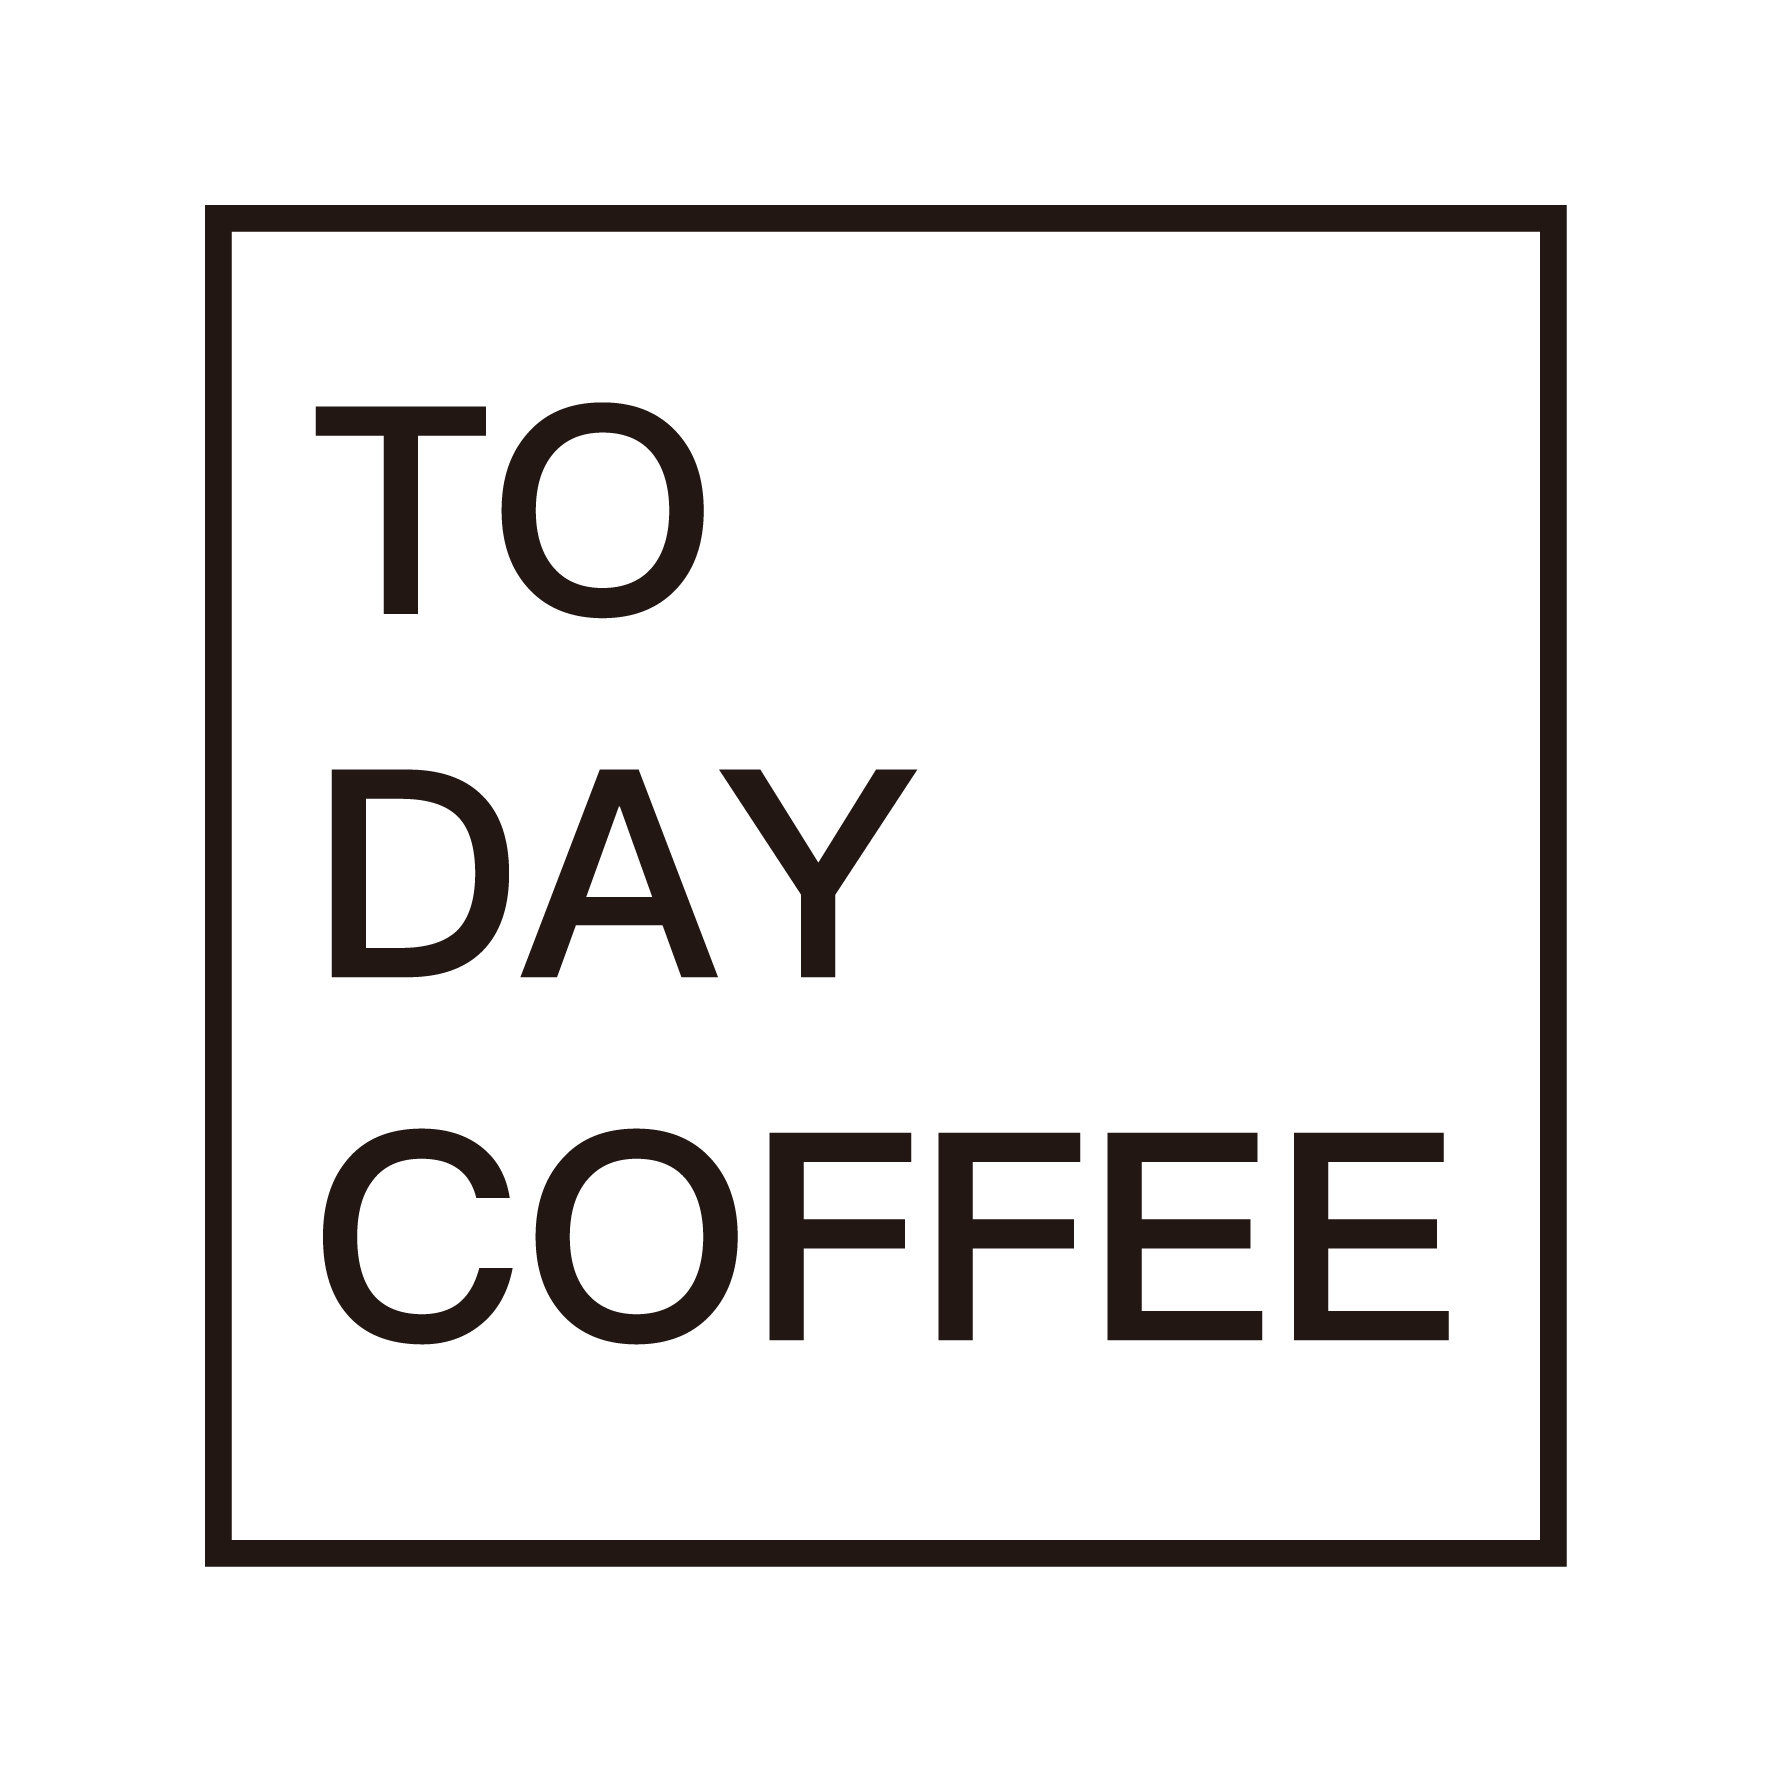 日日咖啡︱TO DAY COFFEE︱直火煎焙專門店